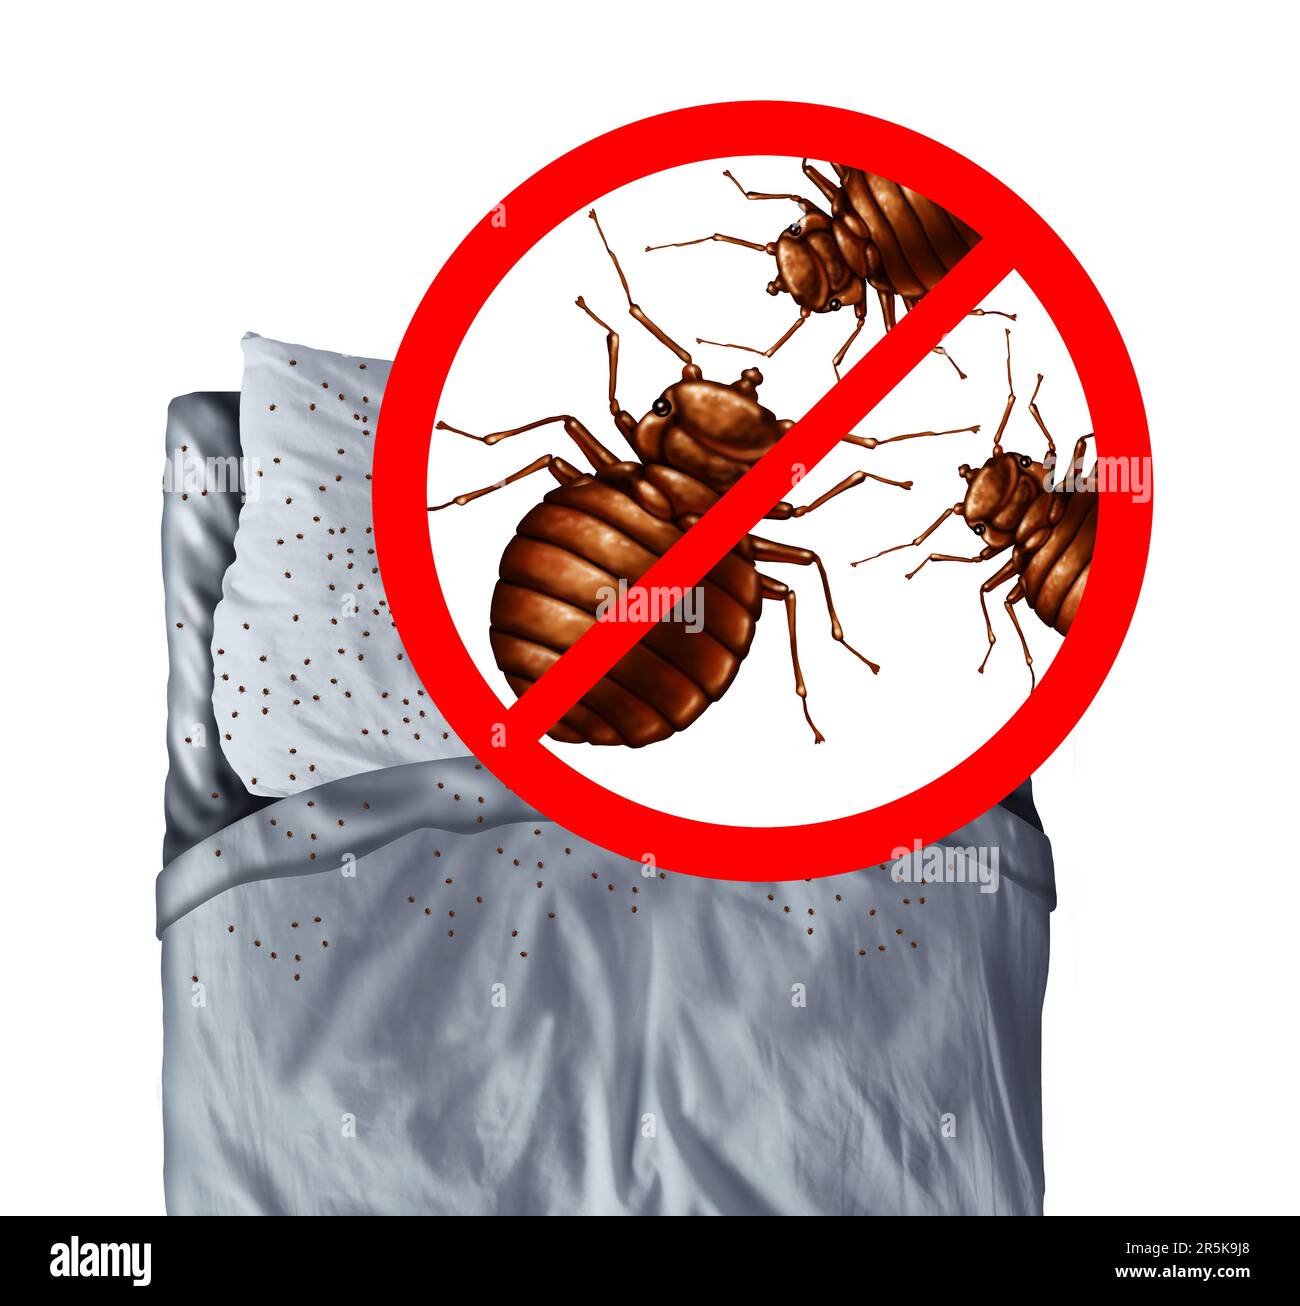 Bettwanzen-Entdeckung und Bettwanzen-Ausrottung oder Bettwanzen-Ausrottung-Befallskonzept als Schädlingsbekämpfung parasitärer Insektenschädlinge auf einem Kissen Stockfoto